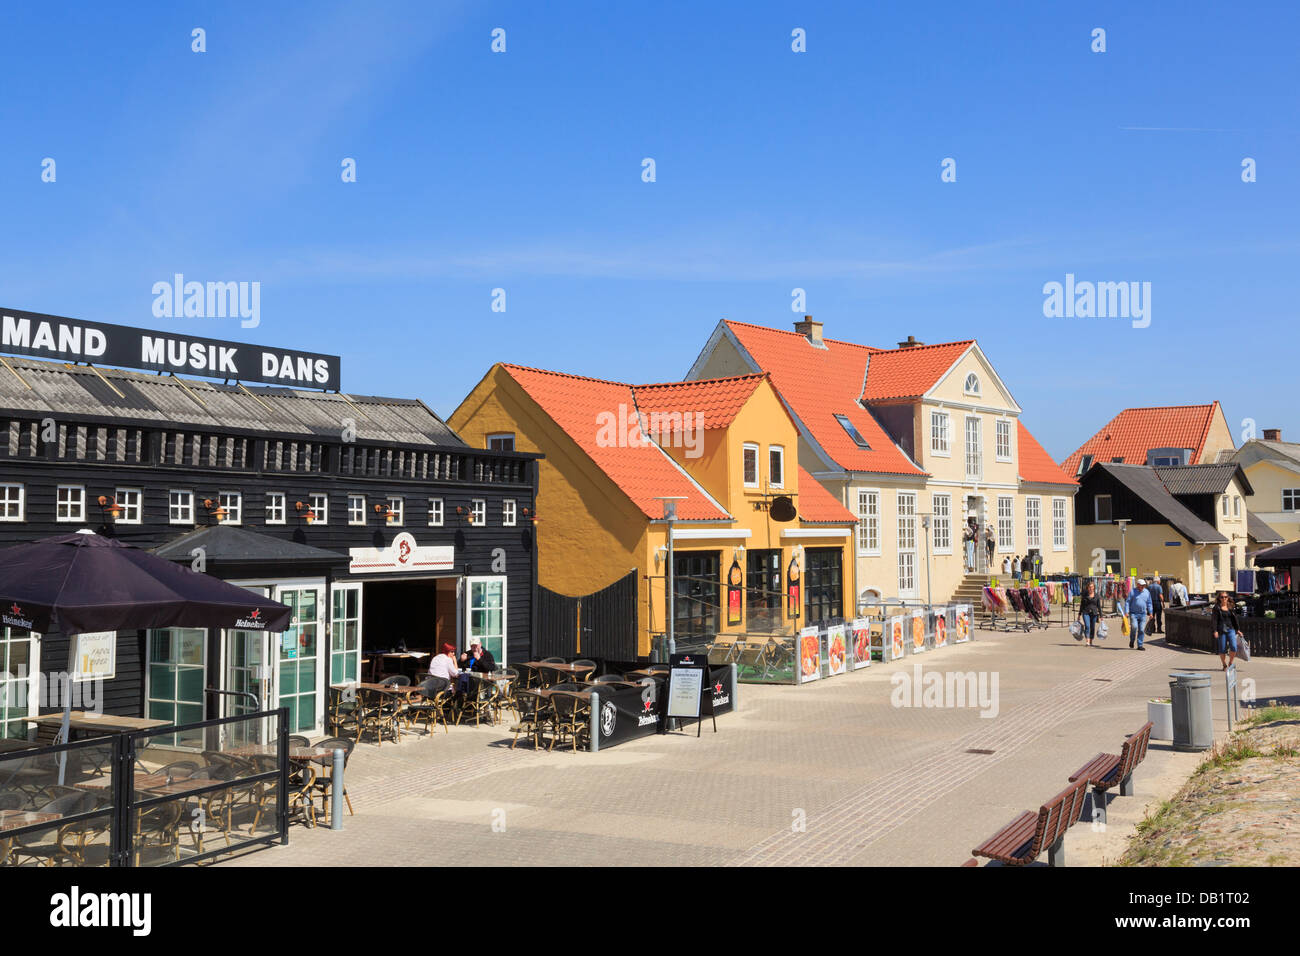 Restaurantes y tiendas en la ciudad balneario de Lokken, Jutlandia, Dinamarca Foto de stock